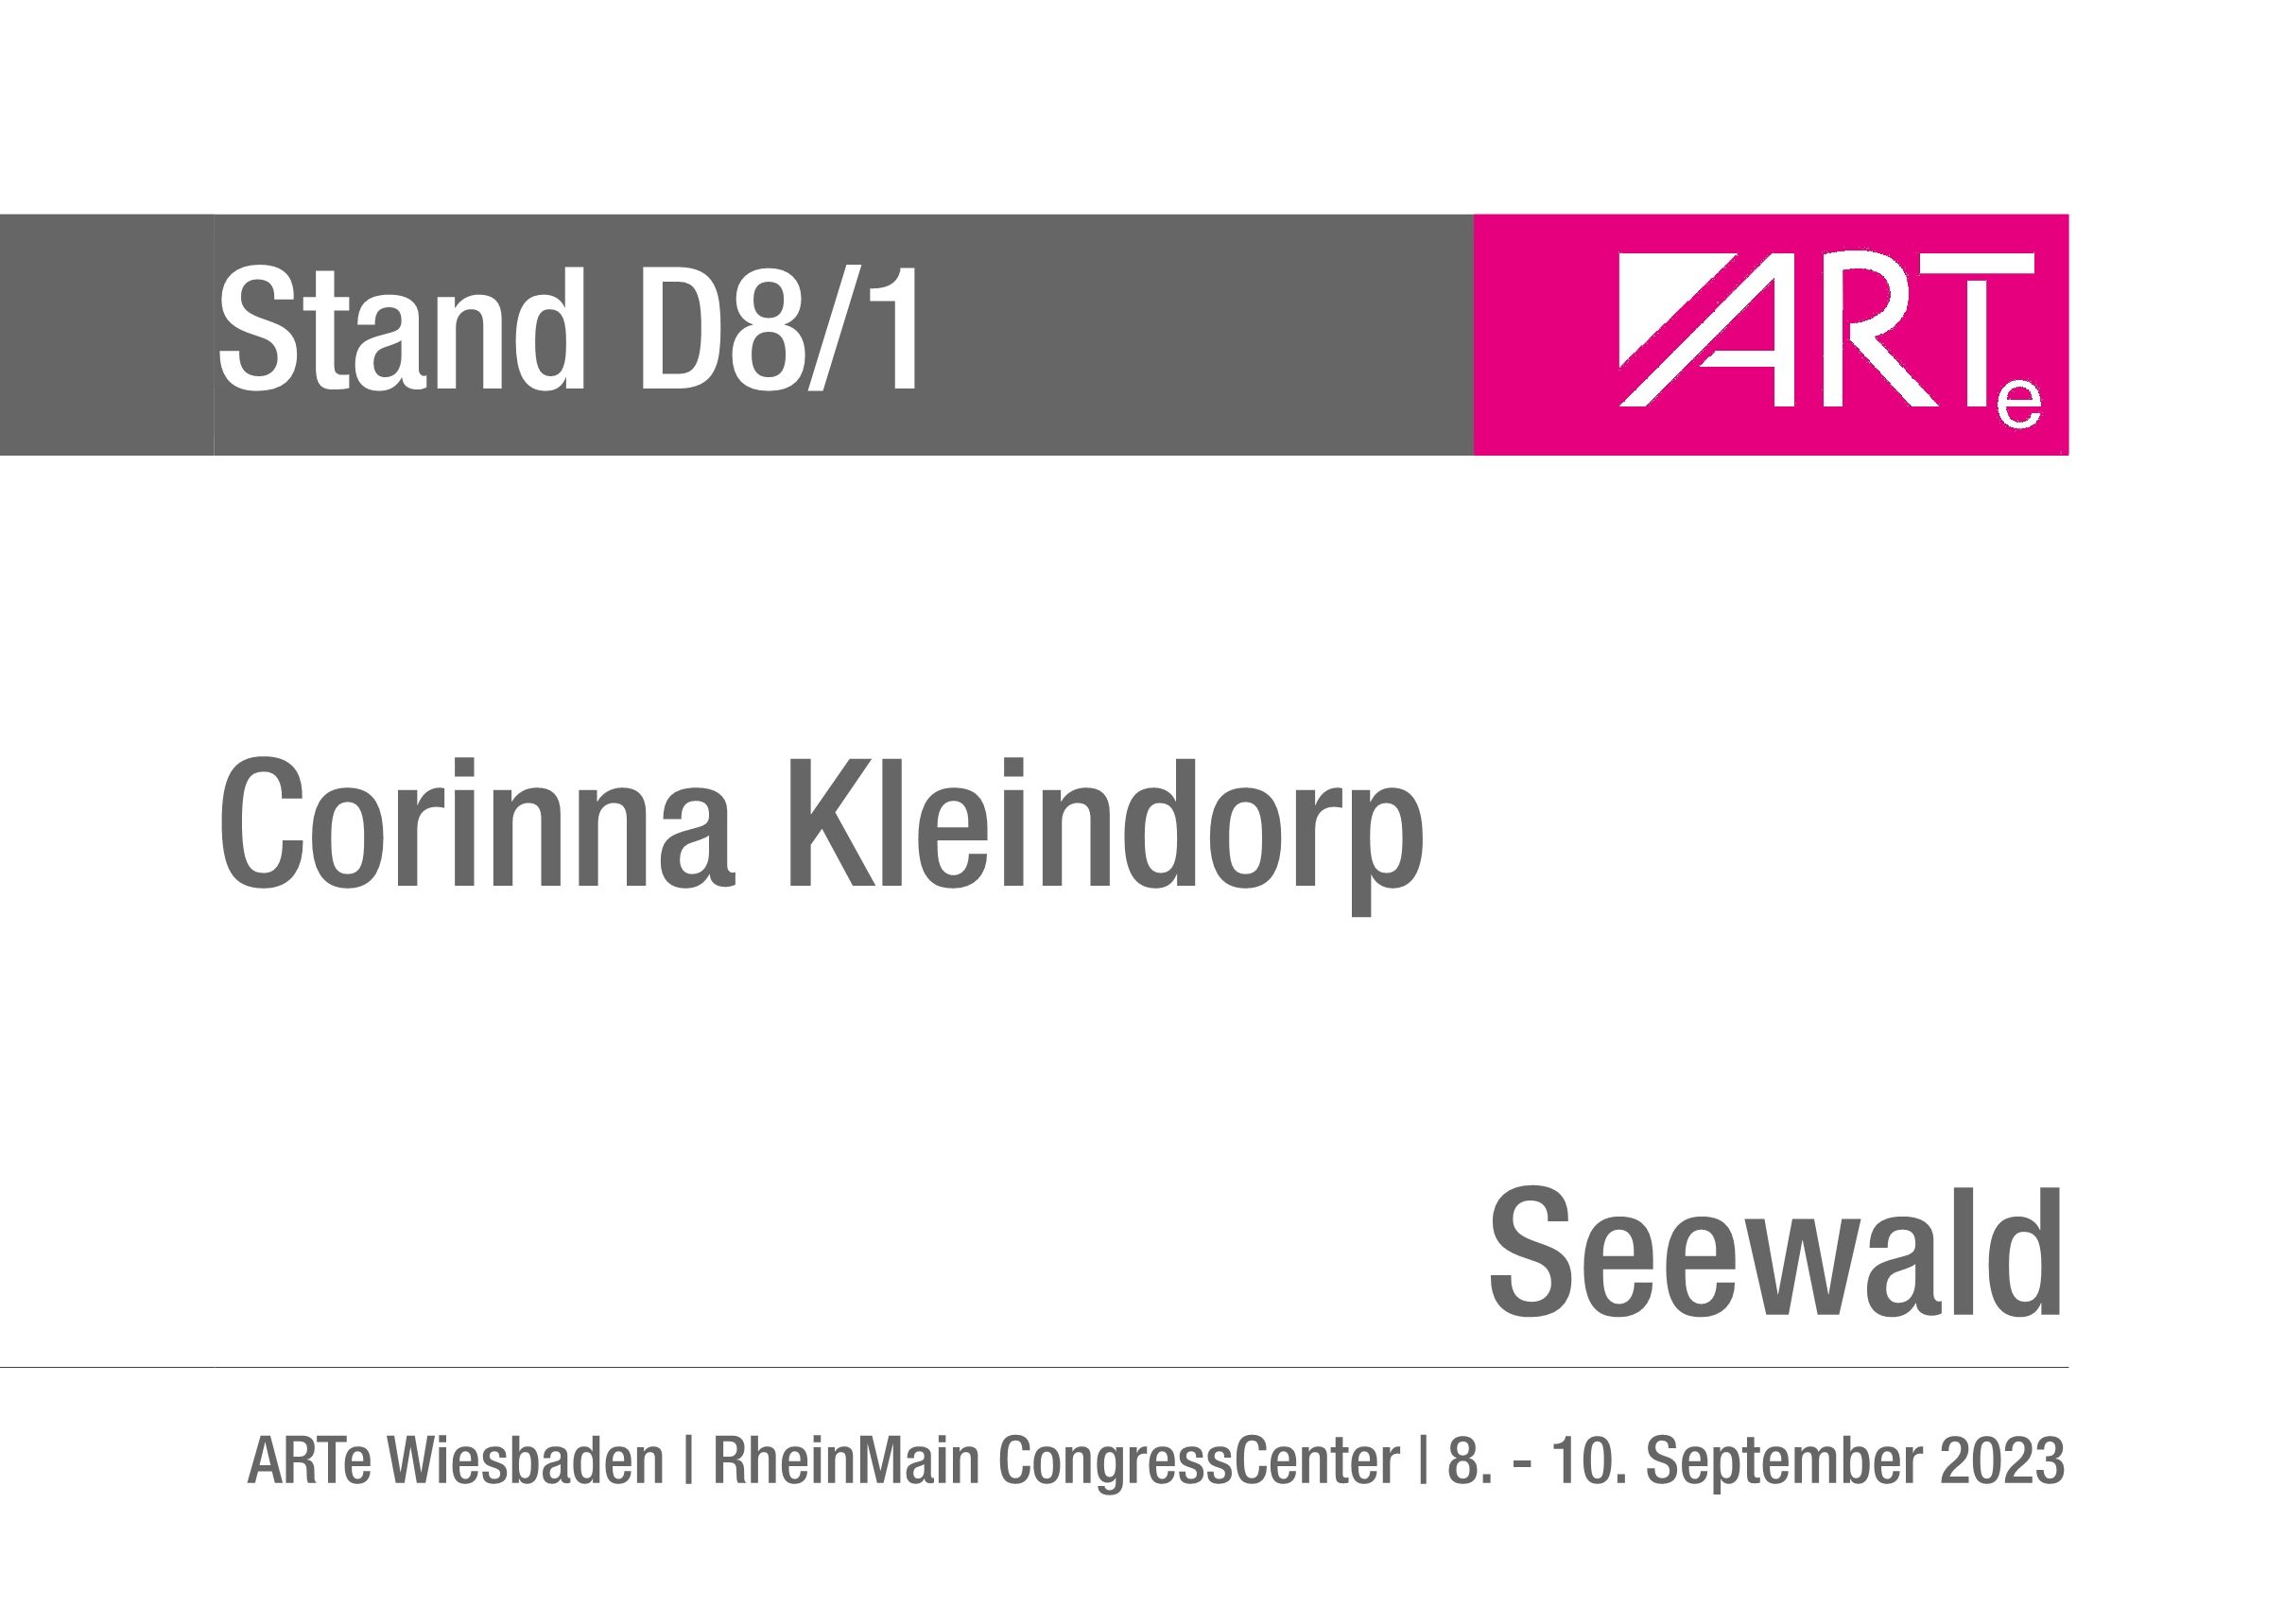 Kleindorp_Corinna_Standschild_Wiesbaden_2023